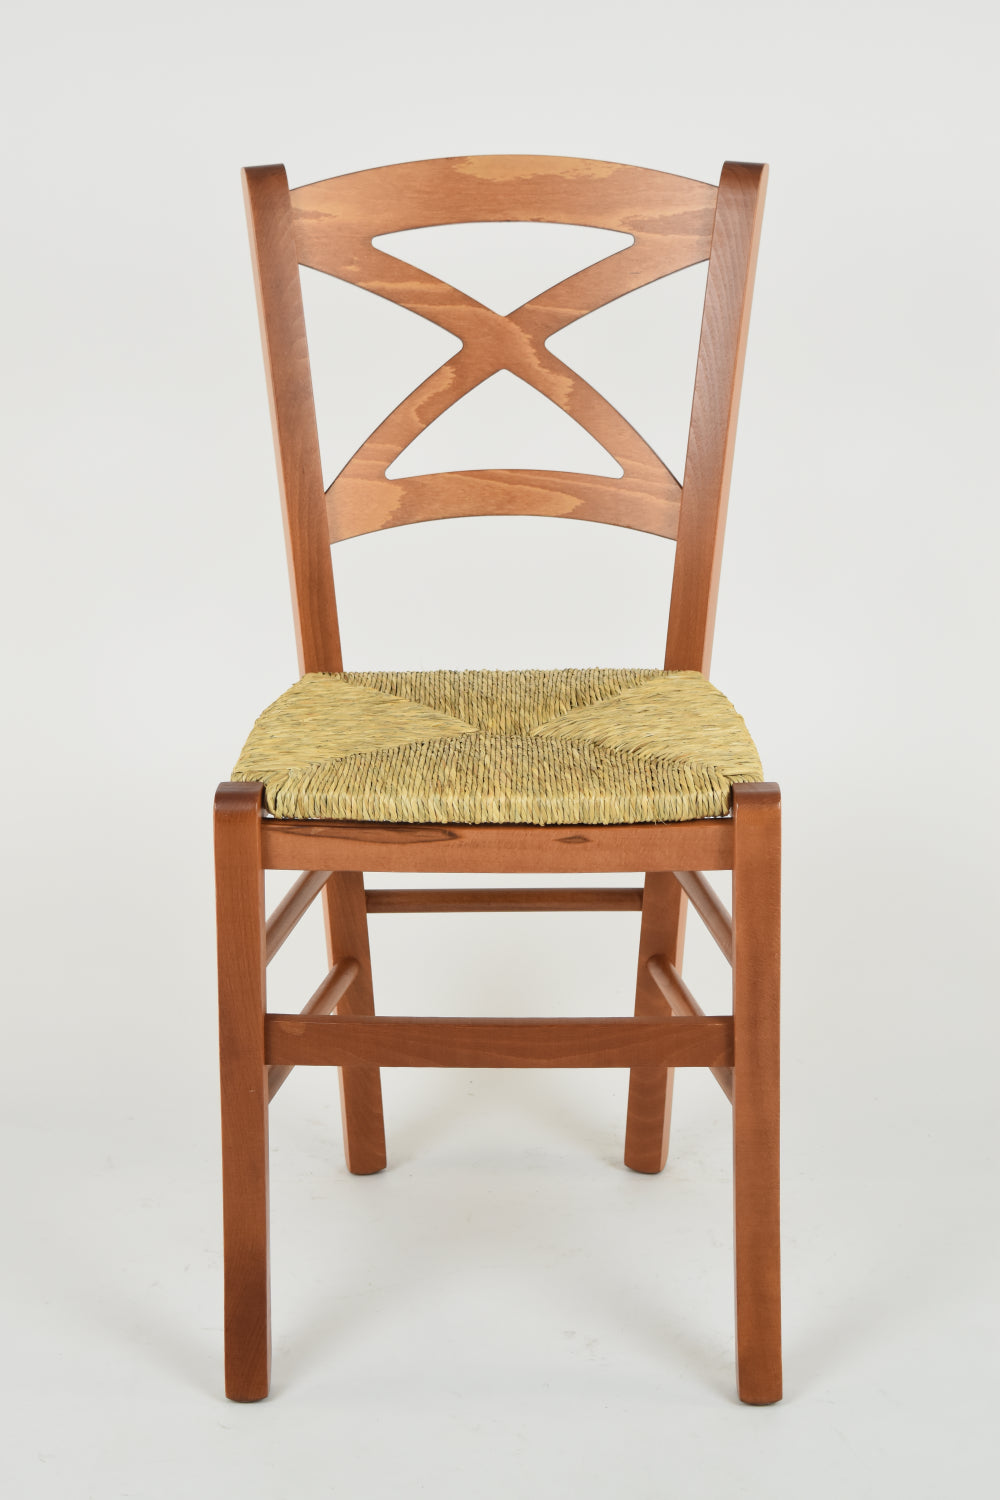 Tommychairs - Set 4 sillas de Cocina y Comedor Cross, Estructura en Madera de Haya Color Cerezo y Asiento en Paja